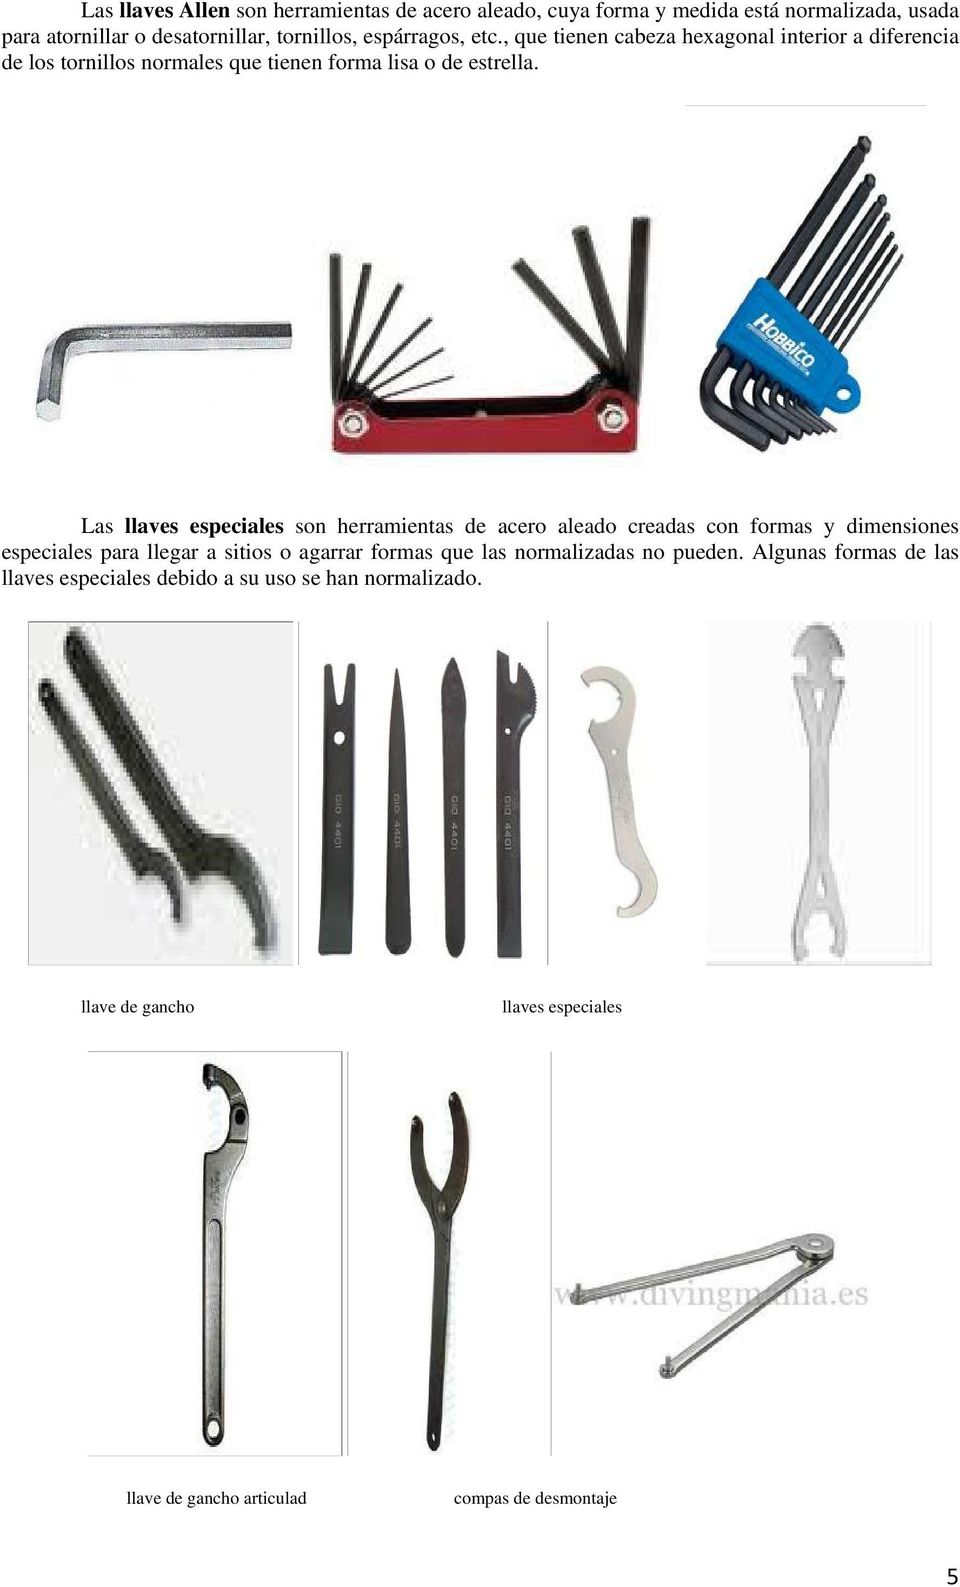 Las llaves especiales son herramientas de acero aleado creadas con formas y dimensiones especiales para llegar a sitios o agarrar formas que las